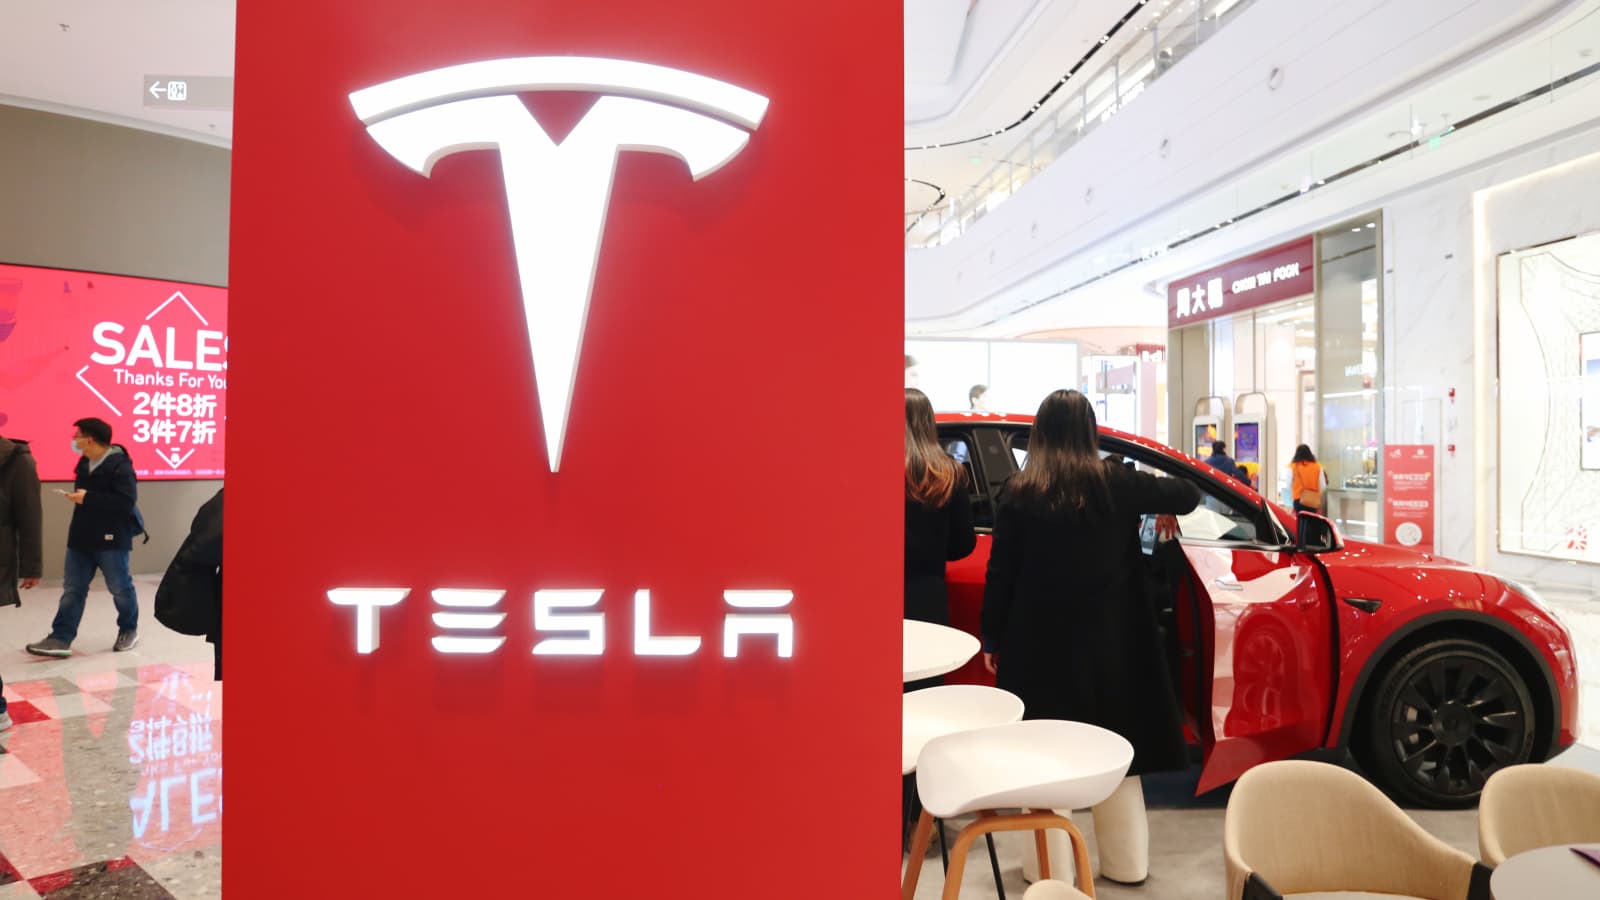 Tesla đang cố gắng dập tắt những tin đồn về nhu cầu thấp ở Trung Quốc sau các đợt giảm giá mới do nhà sản xuất ô tô này đưa ra. Tesla Trung Quốc cho biết sẽ không giảm giá nữa trong năm nay. Ảnh: @AFP.